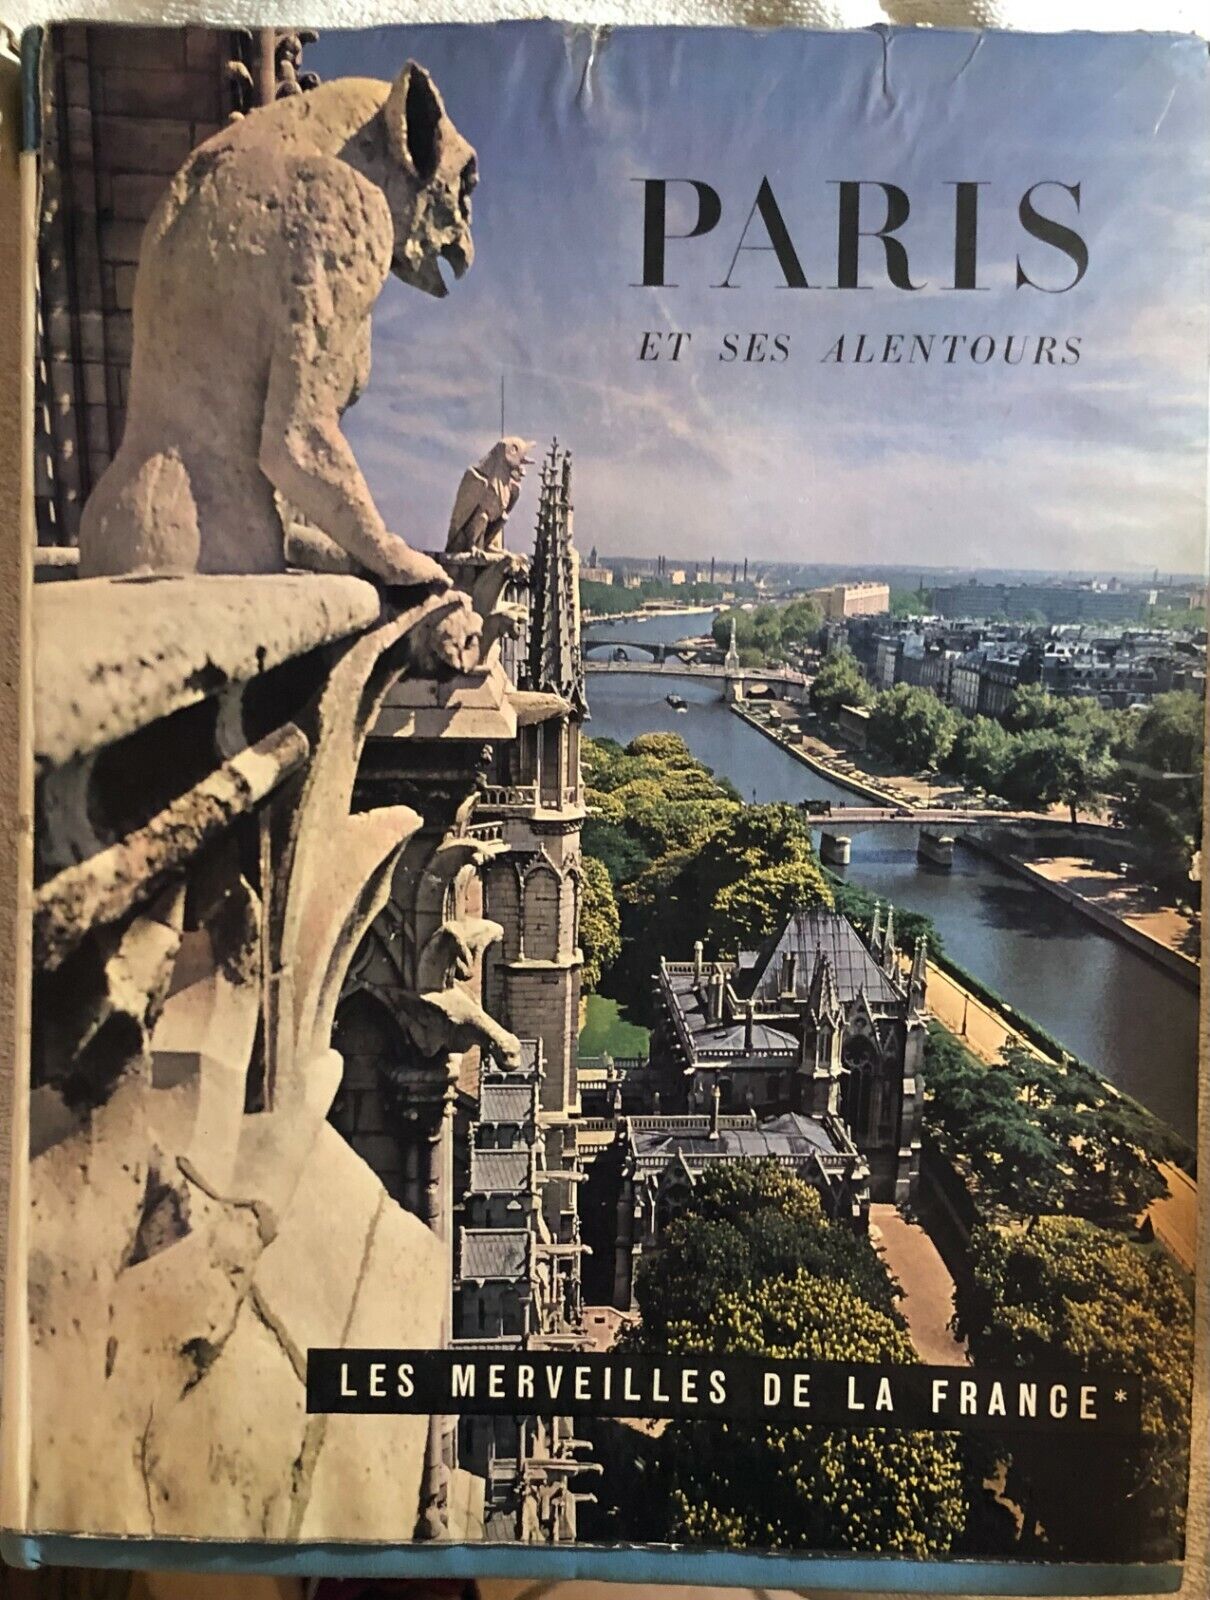 Paris et ses allentours - Les merveilles de la France di d'Henry De Montherlant,